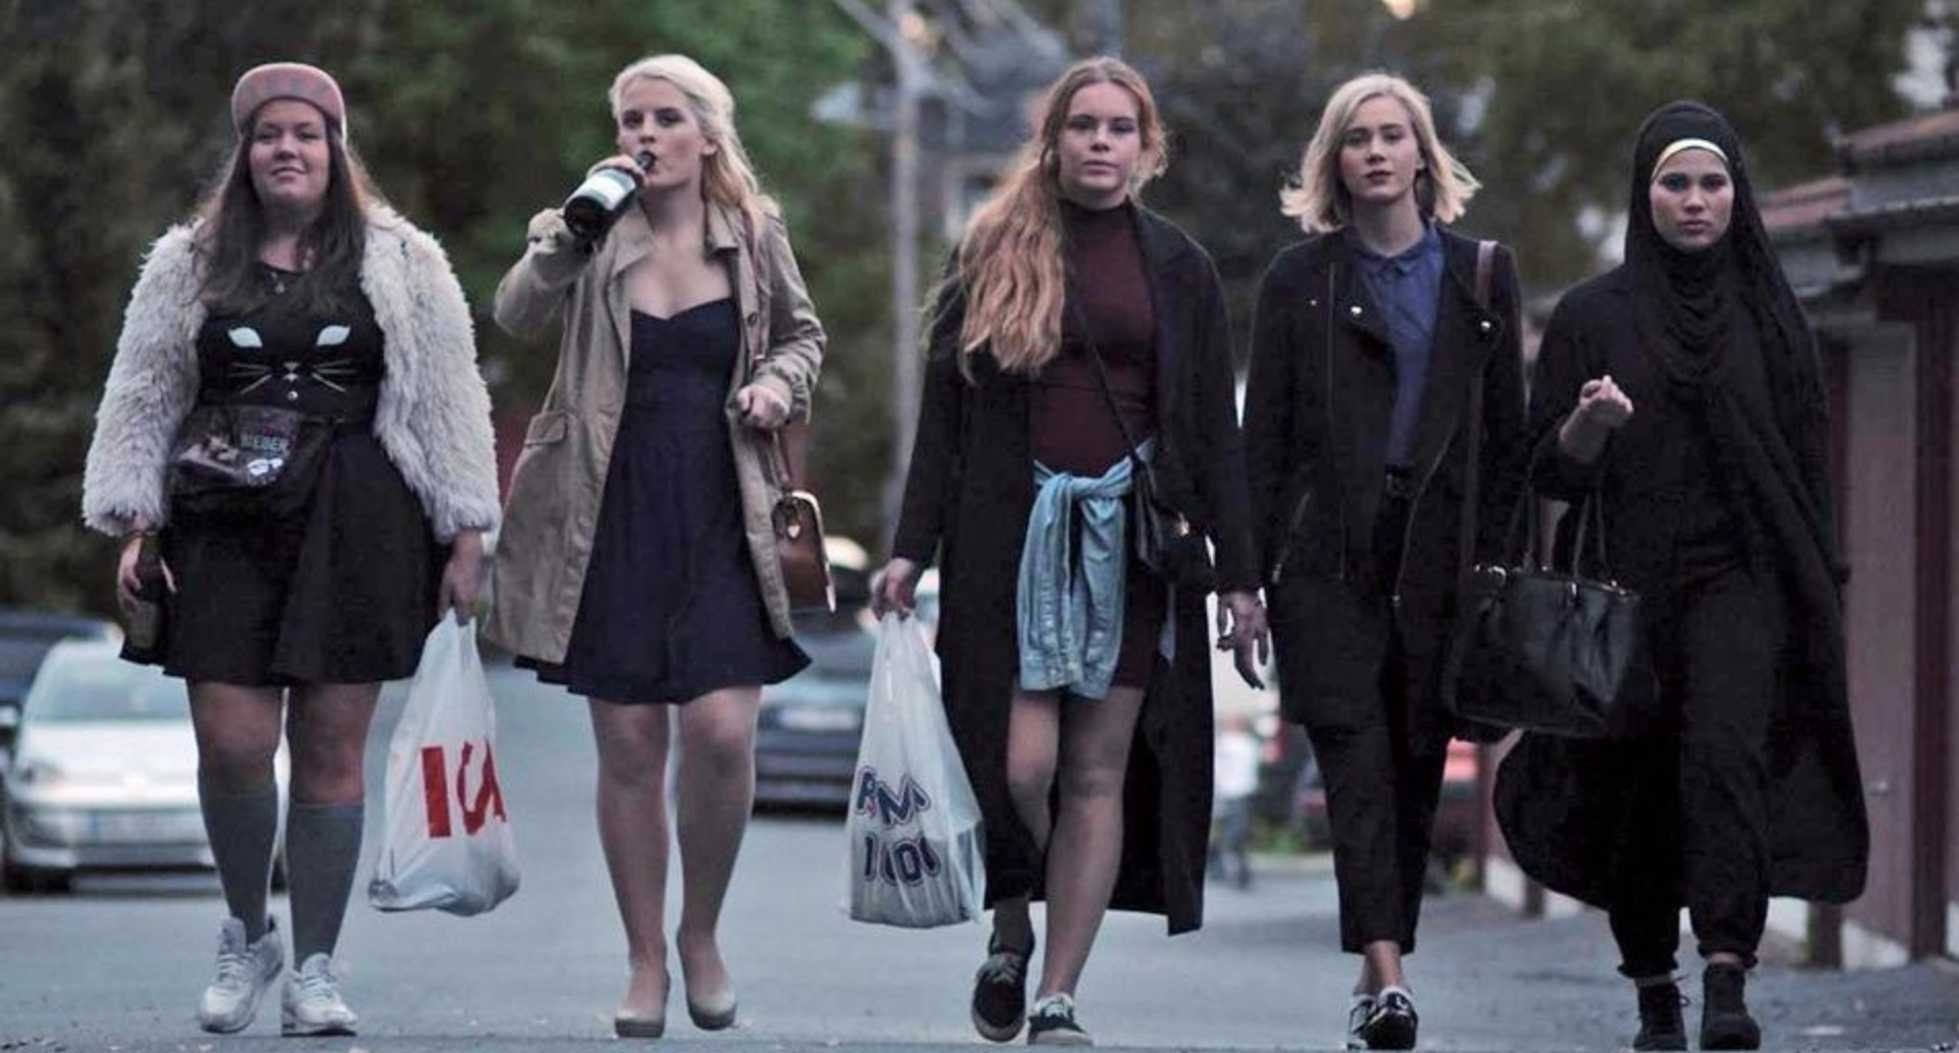 形式从左到右:克里斯,Vilde, Eva, Noora, Sana走在街上一起对着镜头。